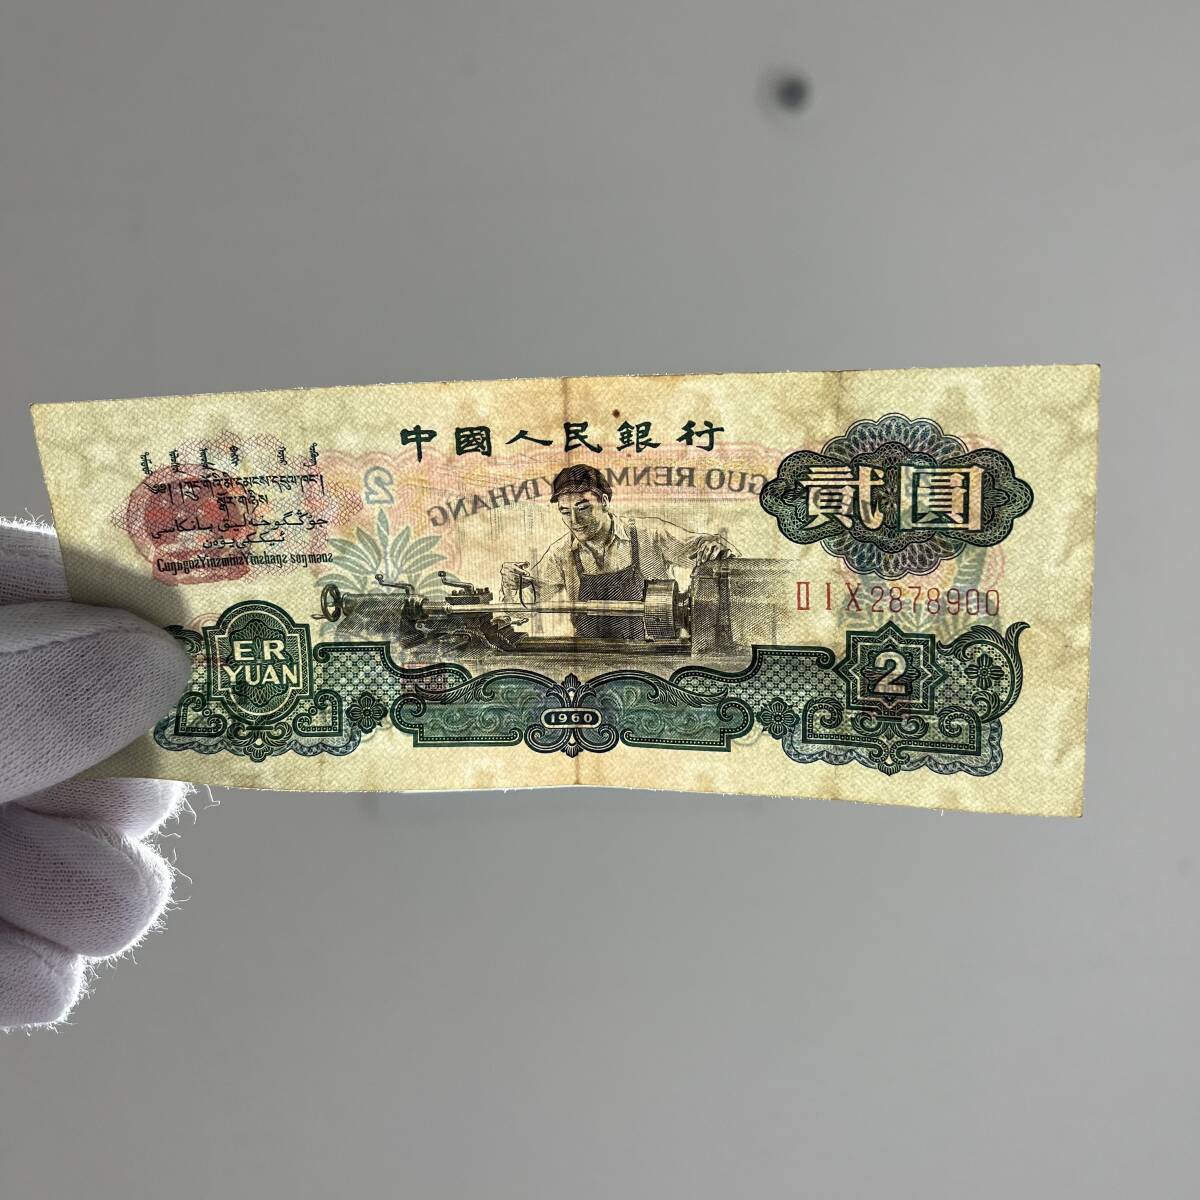 ★☆中国元 人民元 中国人民銀行 旧紙幣 2元紙幣 紙幣 一部汚れ 透かしあり 現状品 #15961☆★_画像3